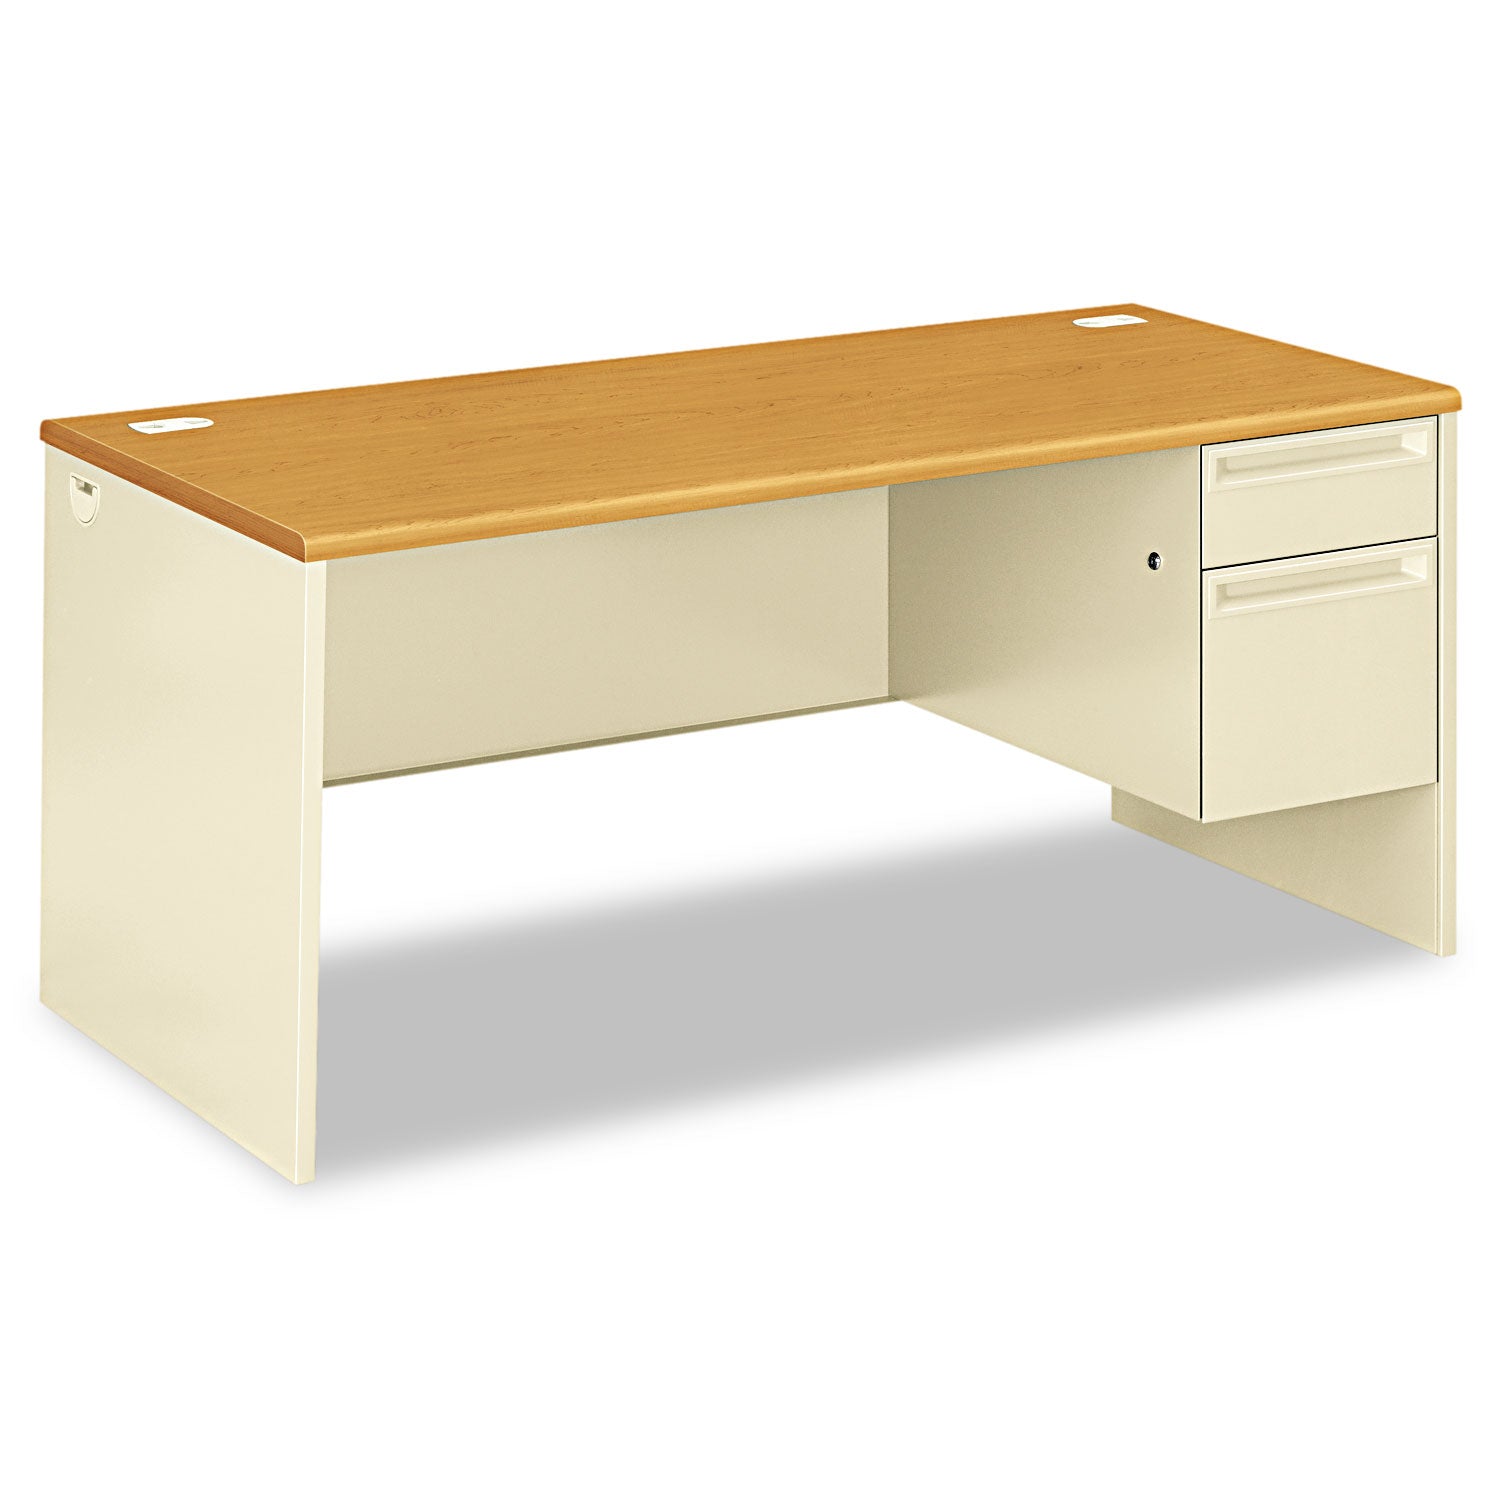 38000 Series Right Pedestal Desk, 66" x 30" x 29.5", Harvest/Putty - 